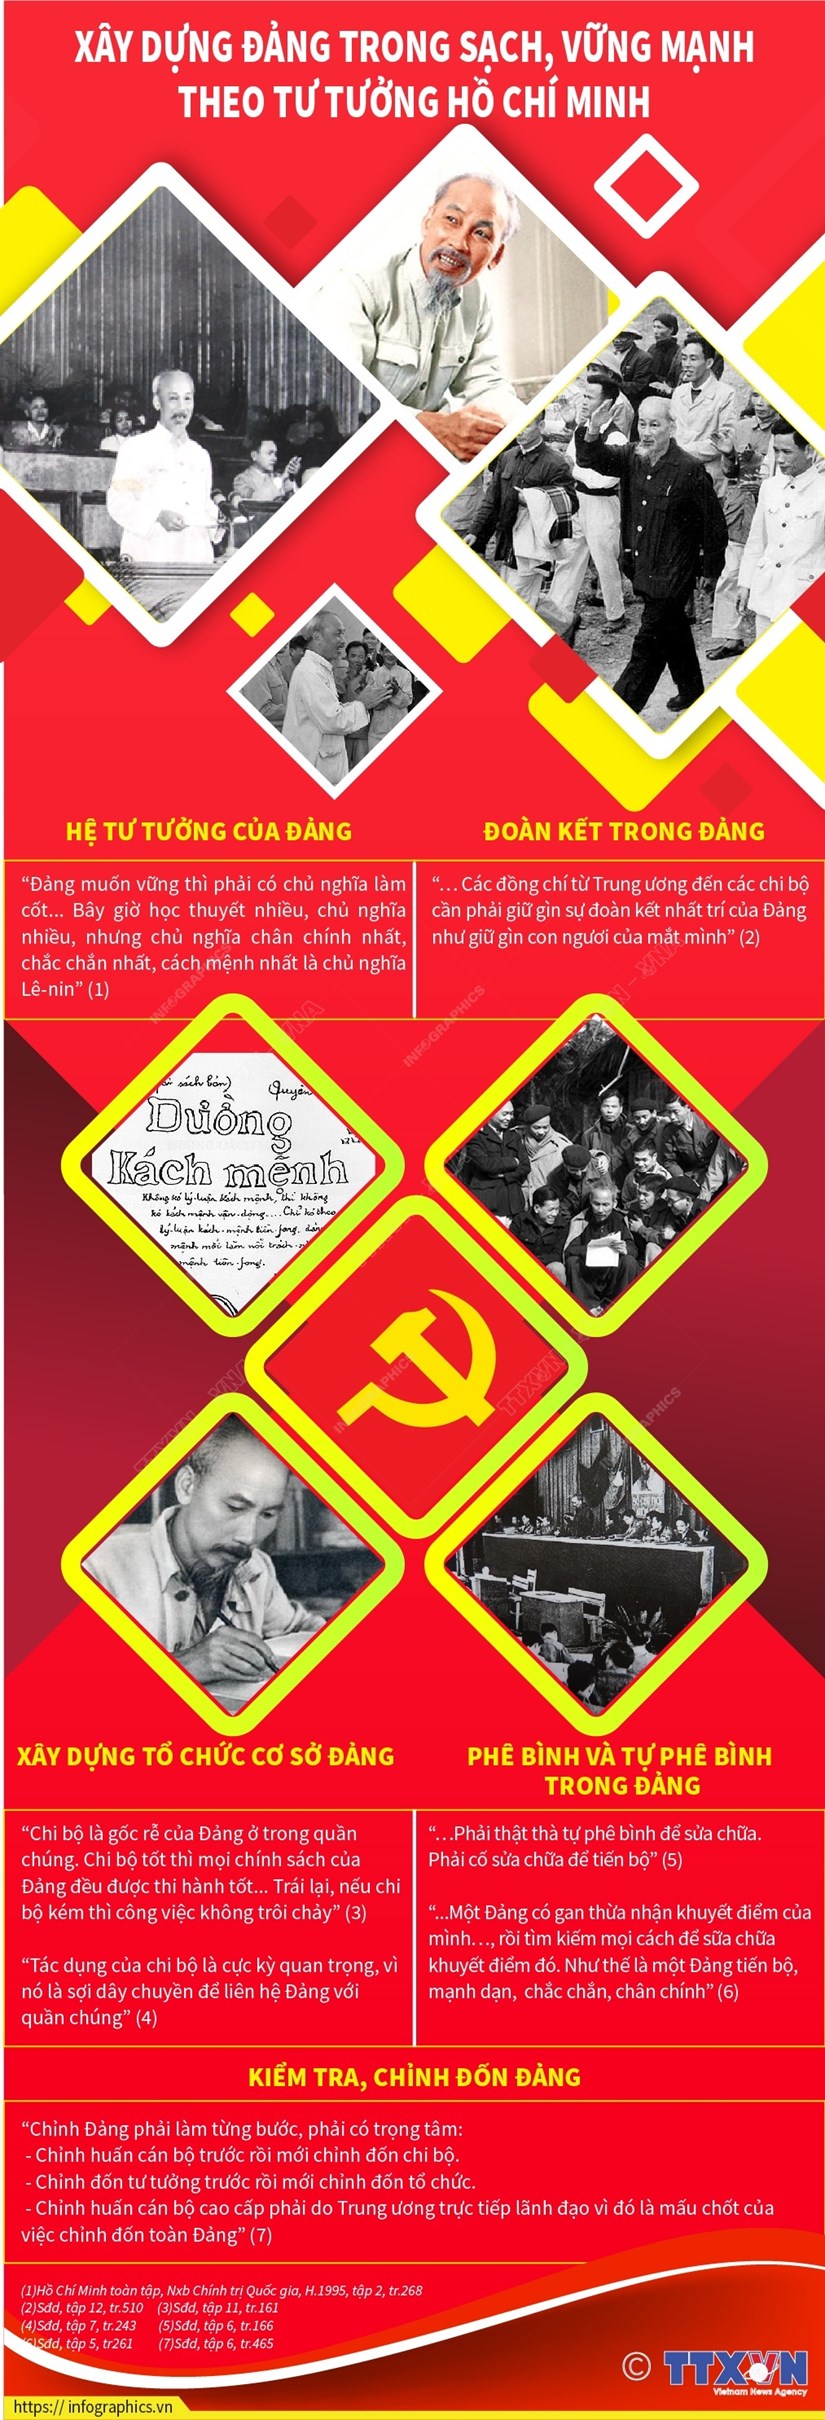 Xây dựng Đảng trong sạch, vững mạnh theo tư tưởng Hồ Chí Minh - Ảnh 1.